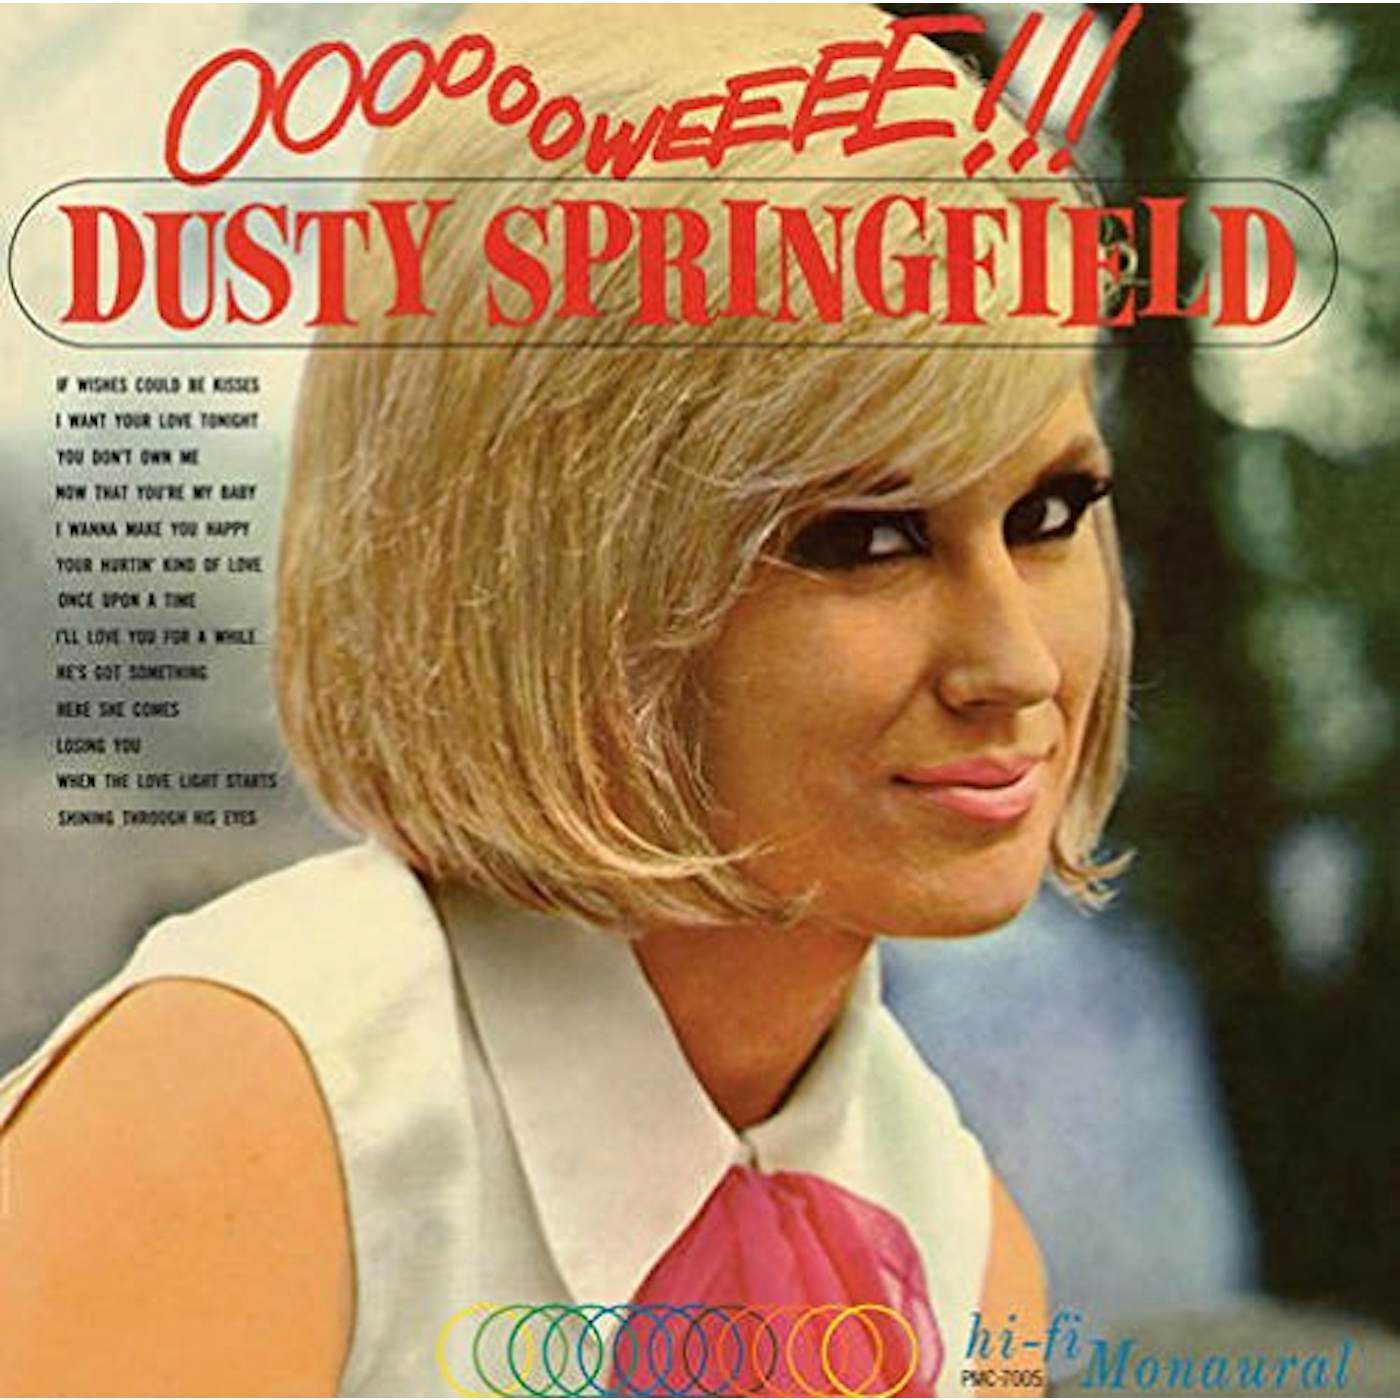 Dusty Springfield OOOOOOWEEEE Vinyl Record